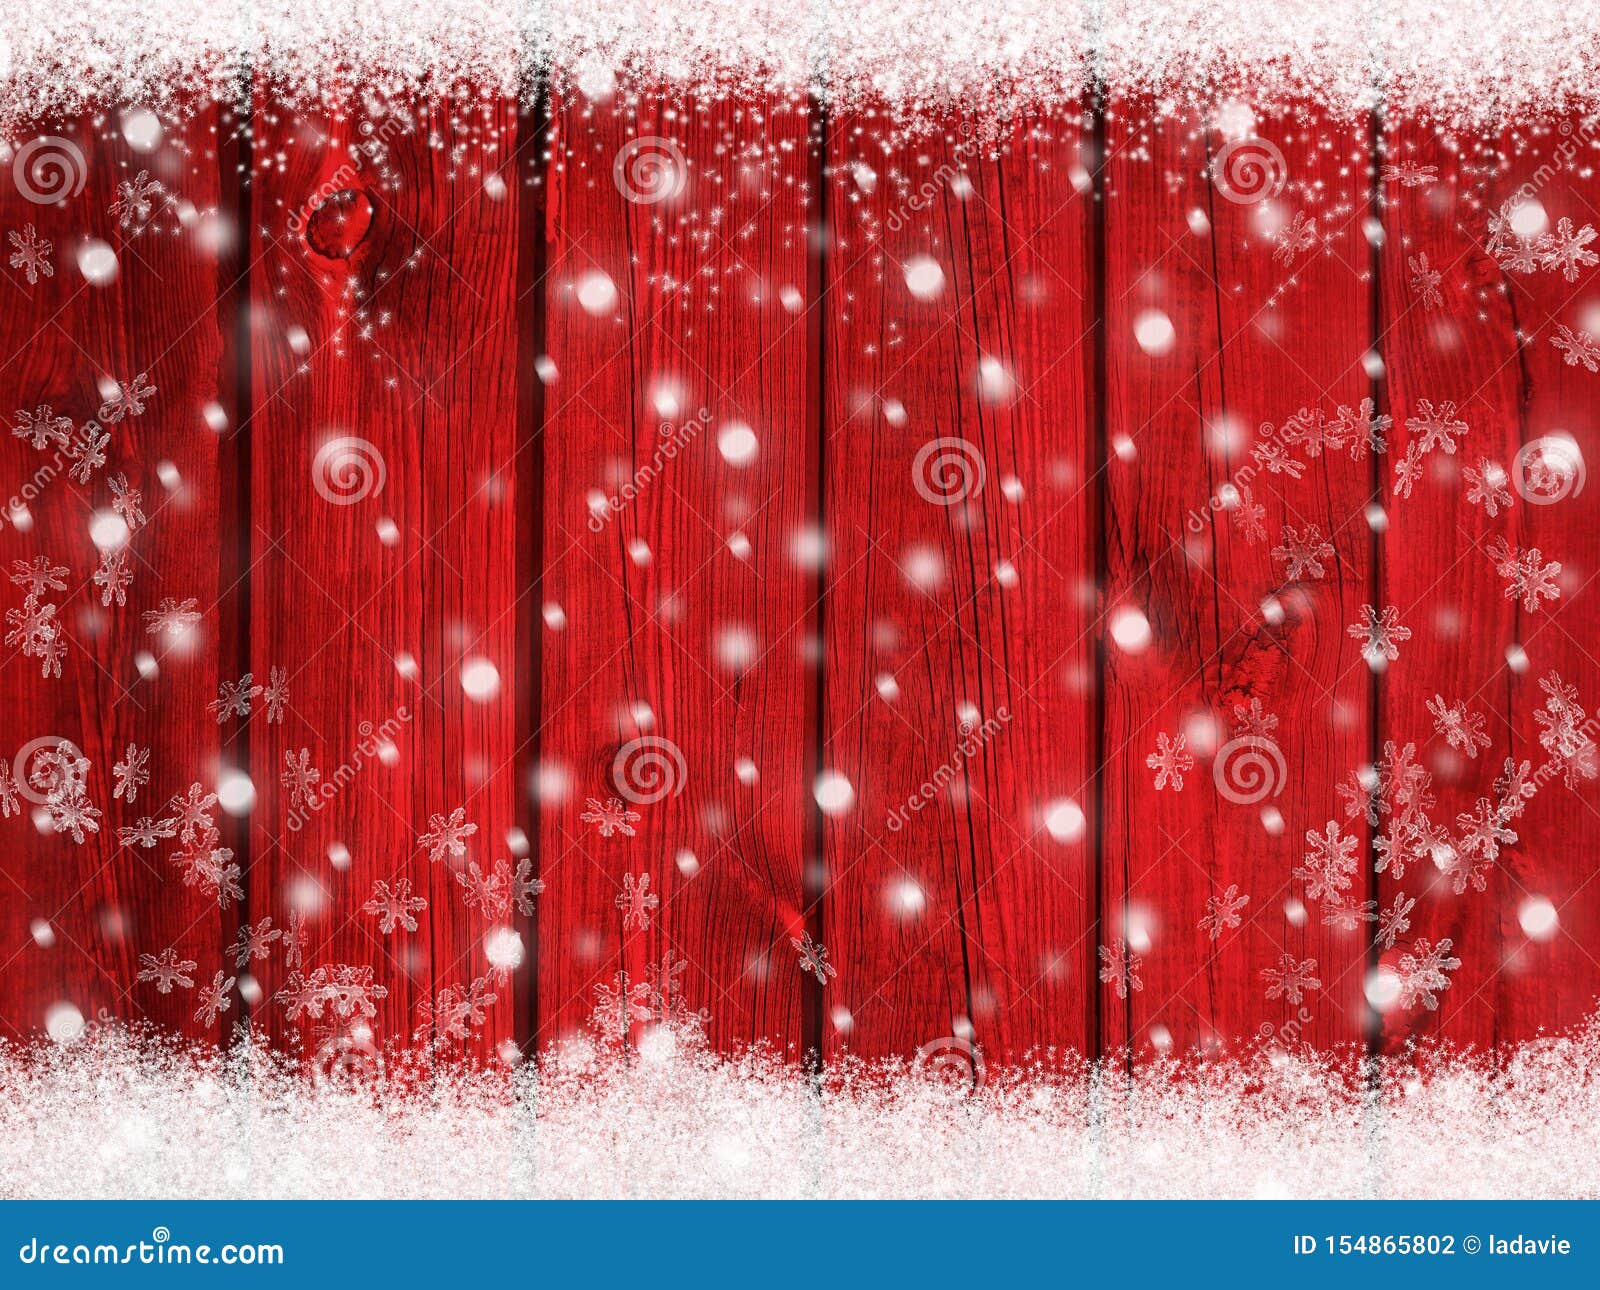 Nền tuyết phủ đỏ rực rỡ, tạo nên khung cảnh đẹp như trong mơ. Hãy bấm vào hình ảnh để chiêm ngưỡng sự độc đáo và hút mắt của nó.